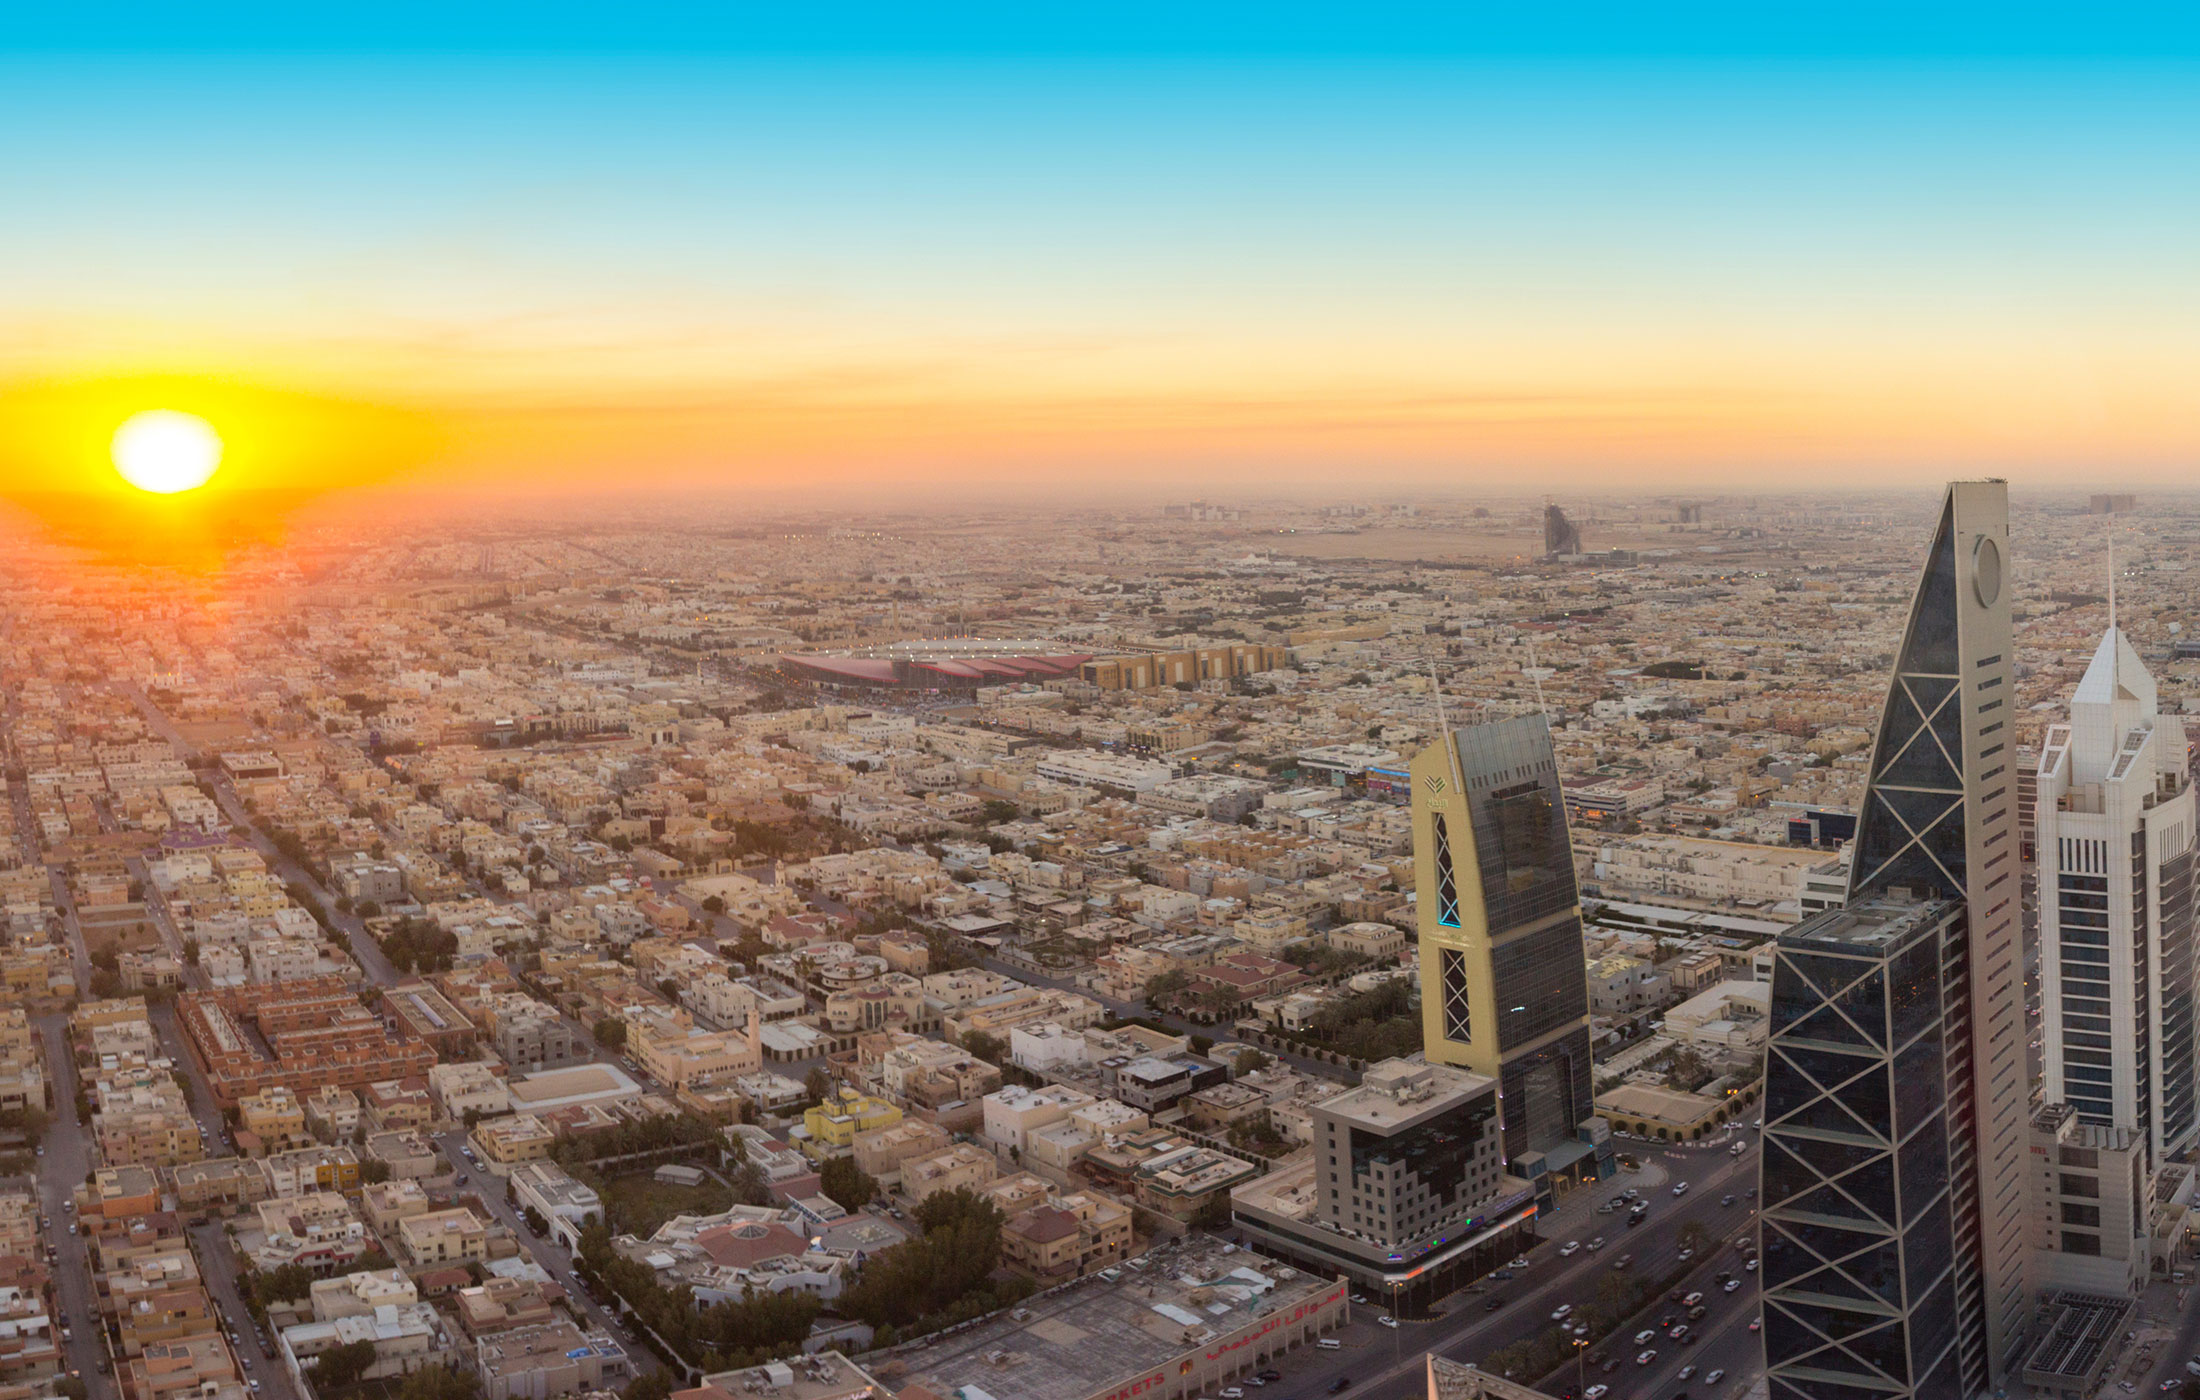 Aerial view of Riyad, Saudi Arabia, in sunset